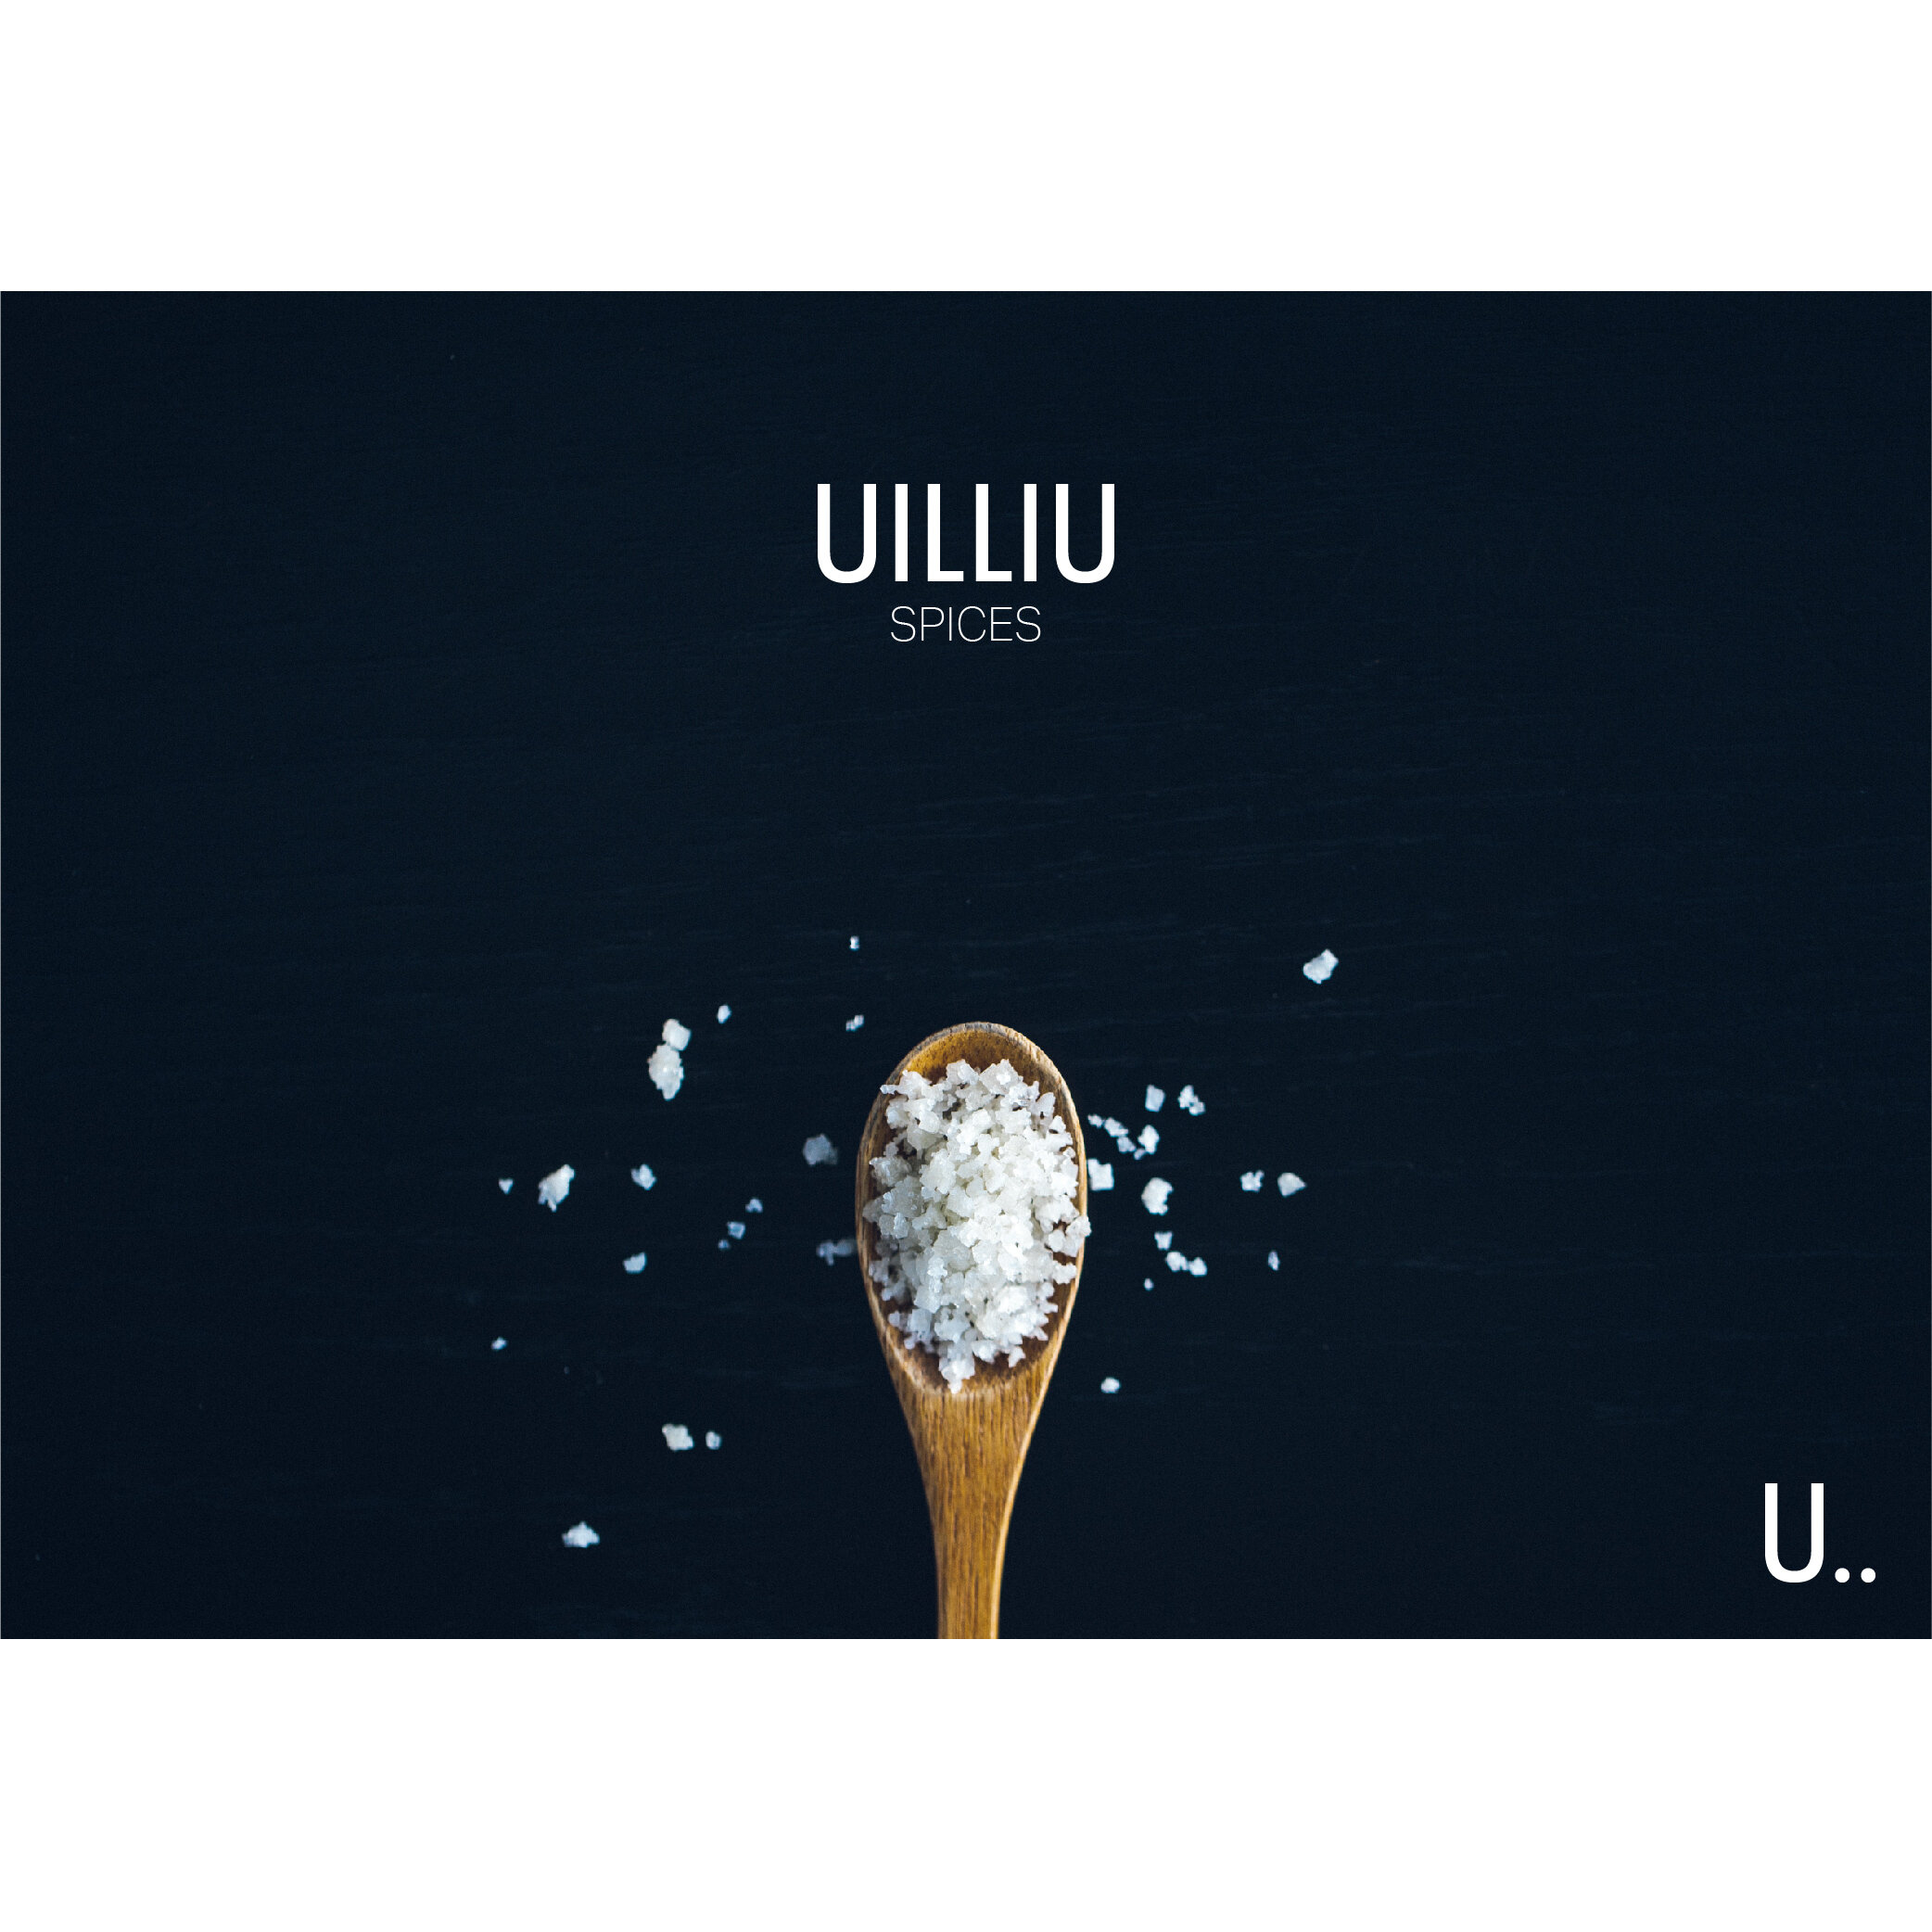 uilliu logo draft 1 example.jpg